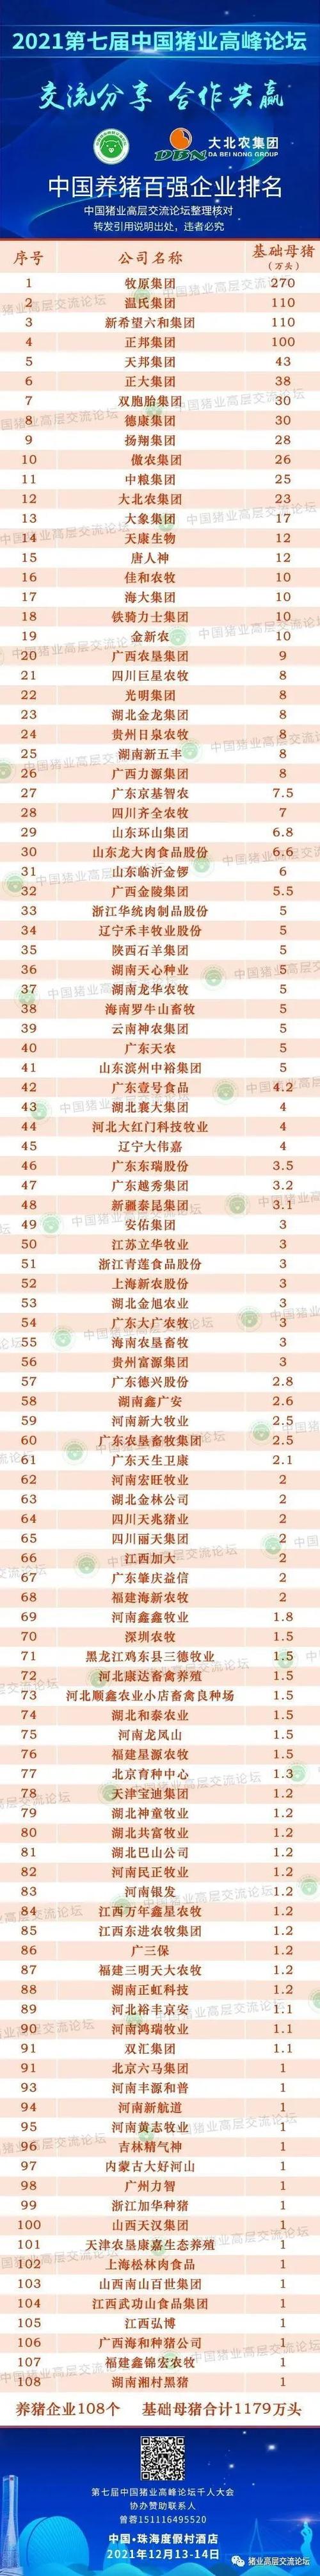 中国养猪百强企业排行榜